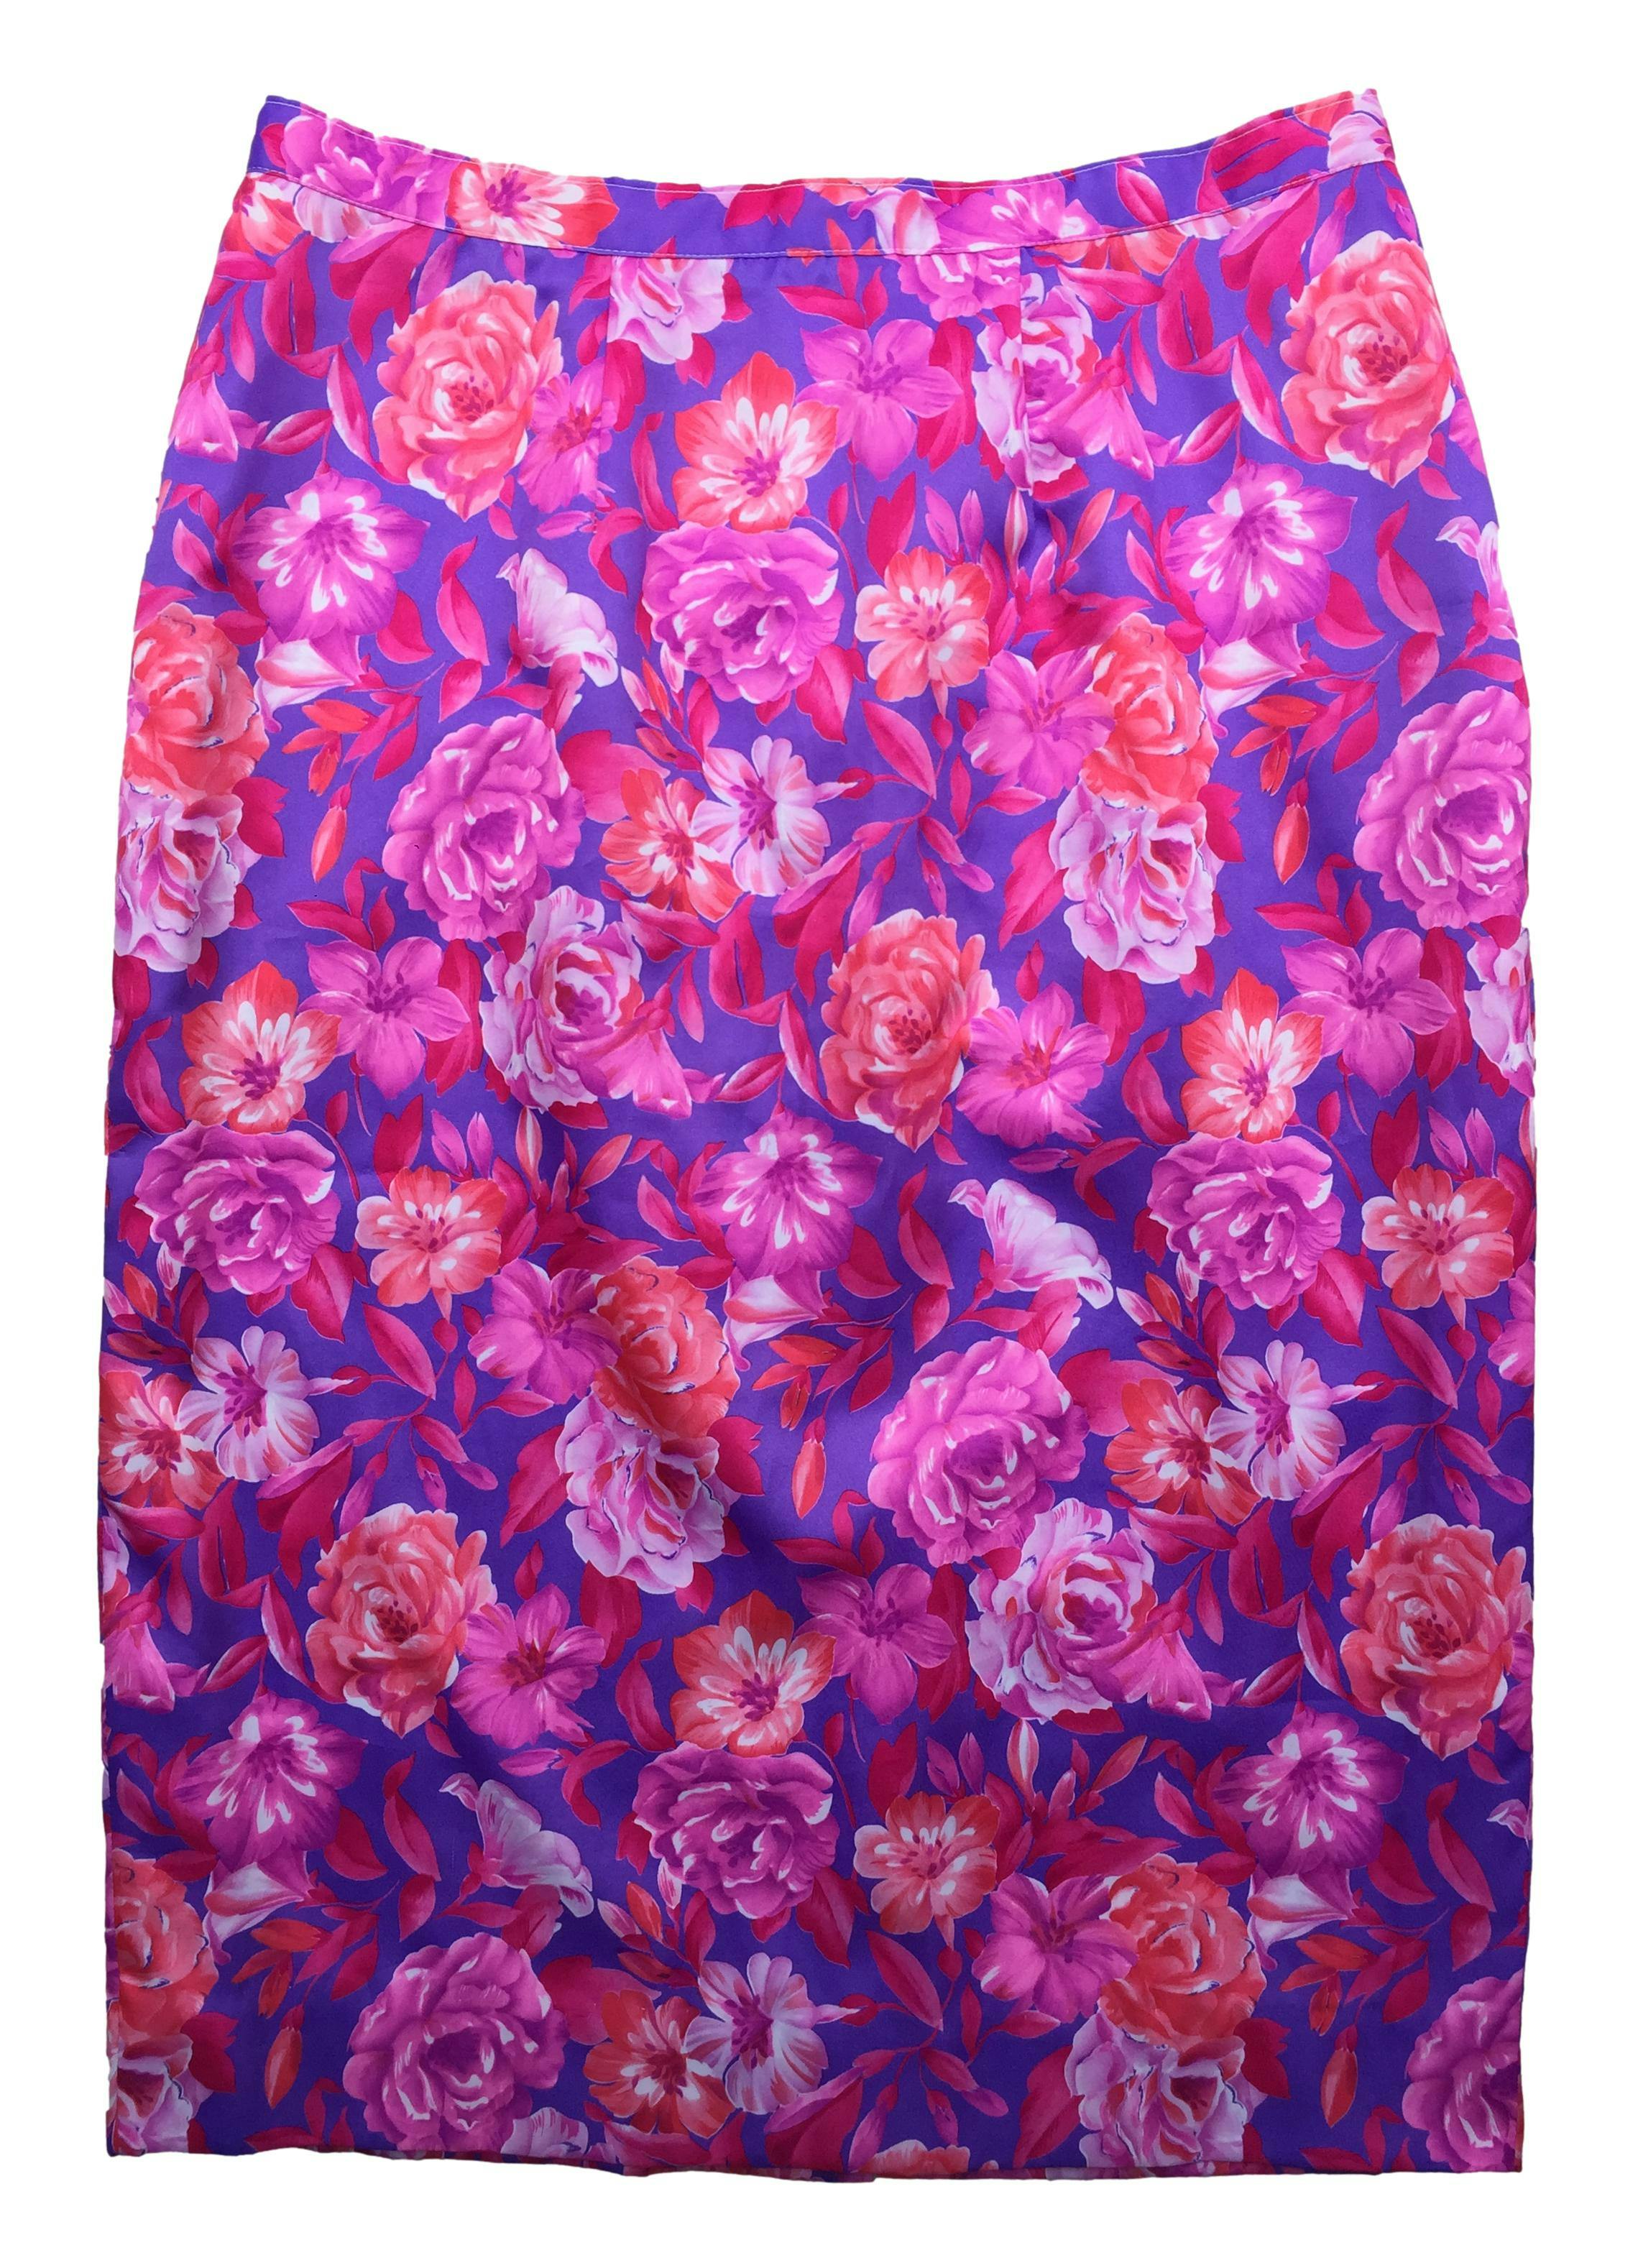 Falda con estampado floral en tonos rosa, morado, cierre y botón posterior. Cintura: 80cm, Largo: 73cm